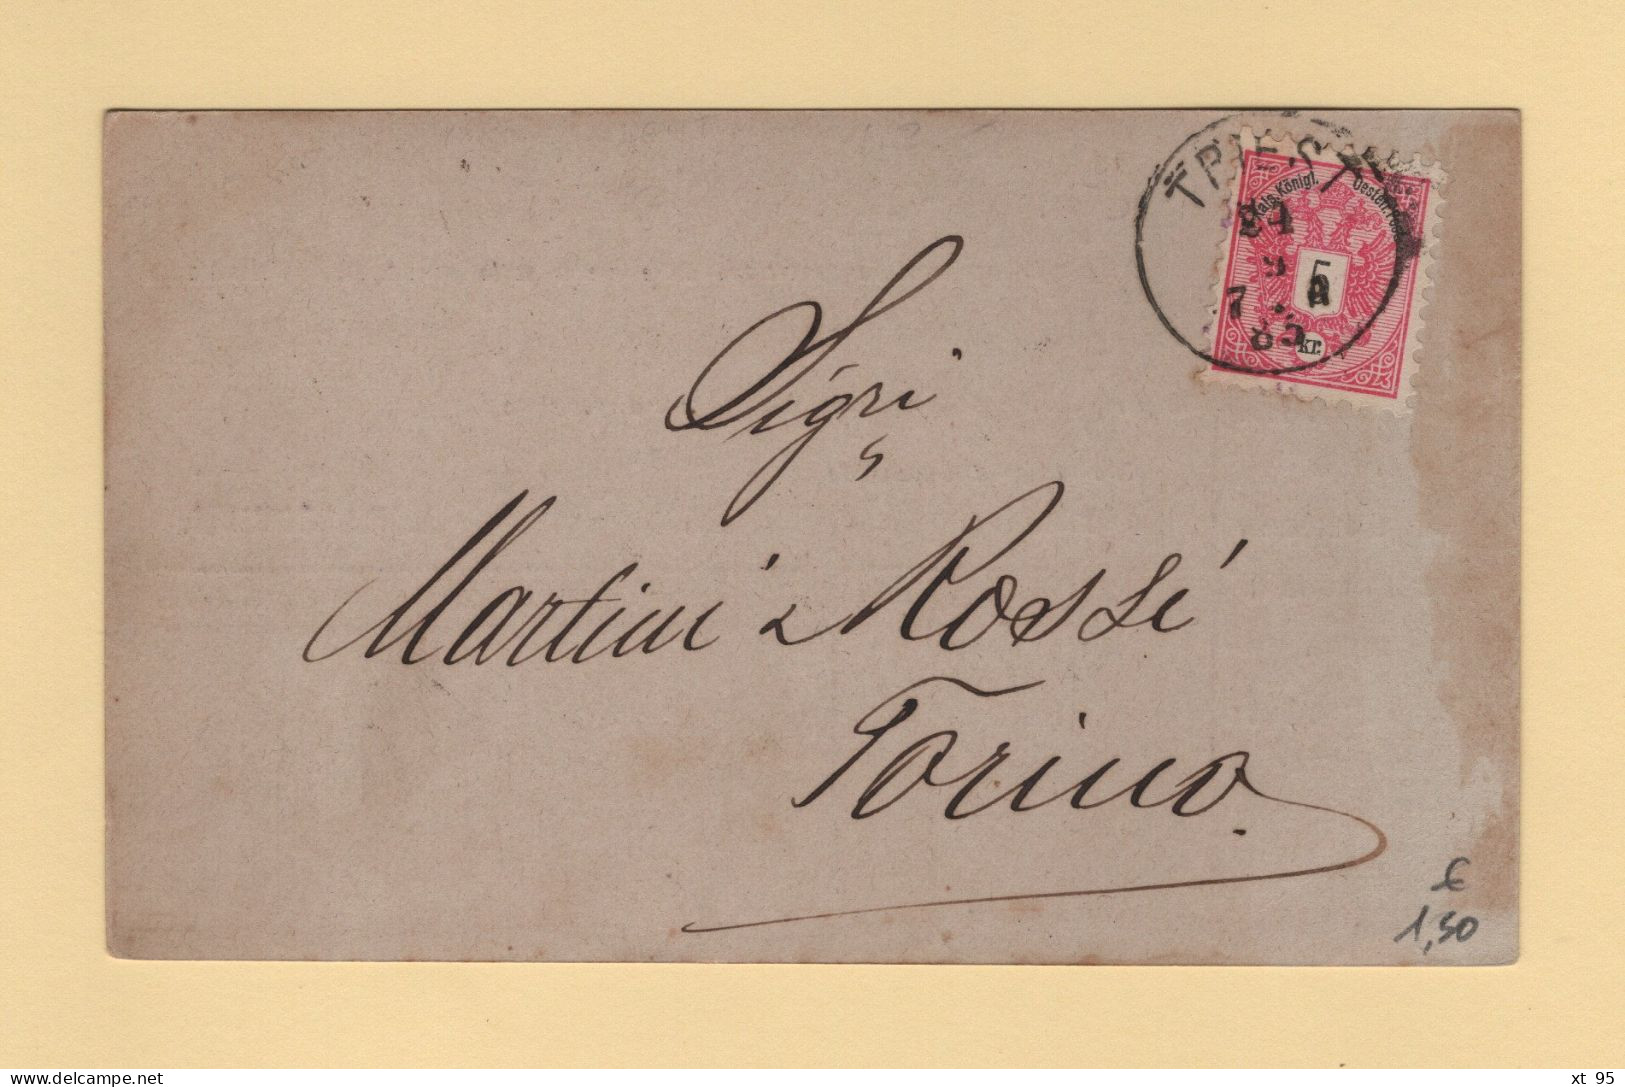 Autriche - Triest - 1885 - Lettres & Documents